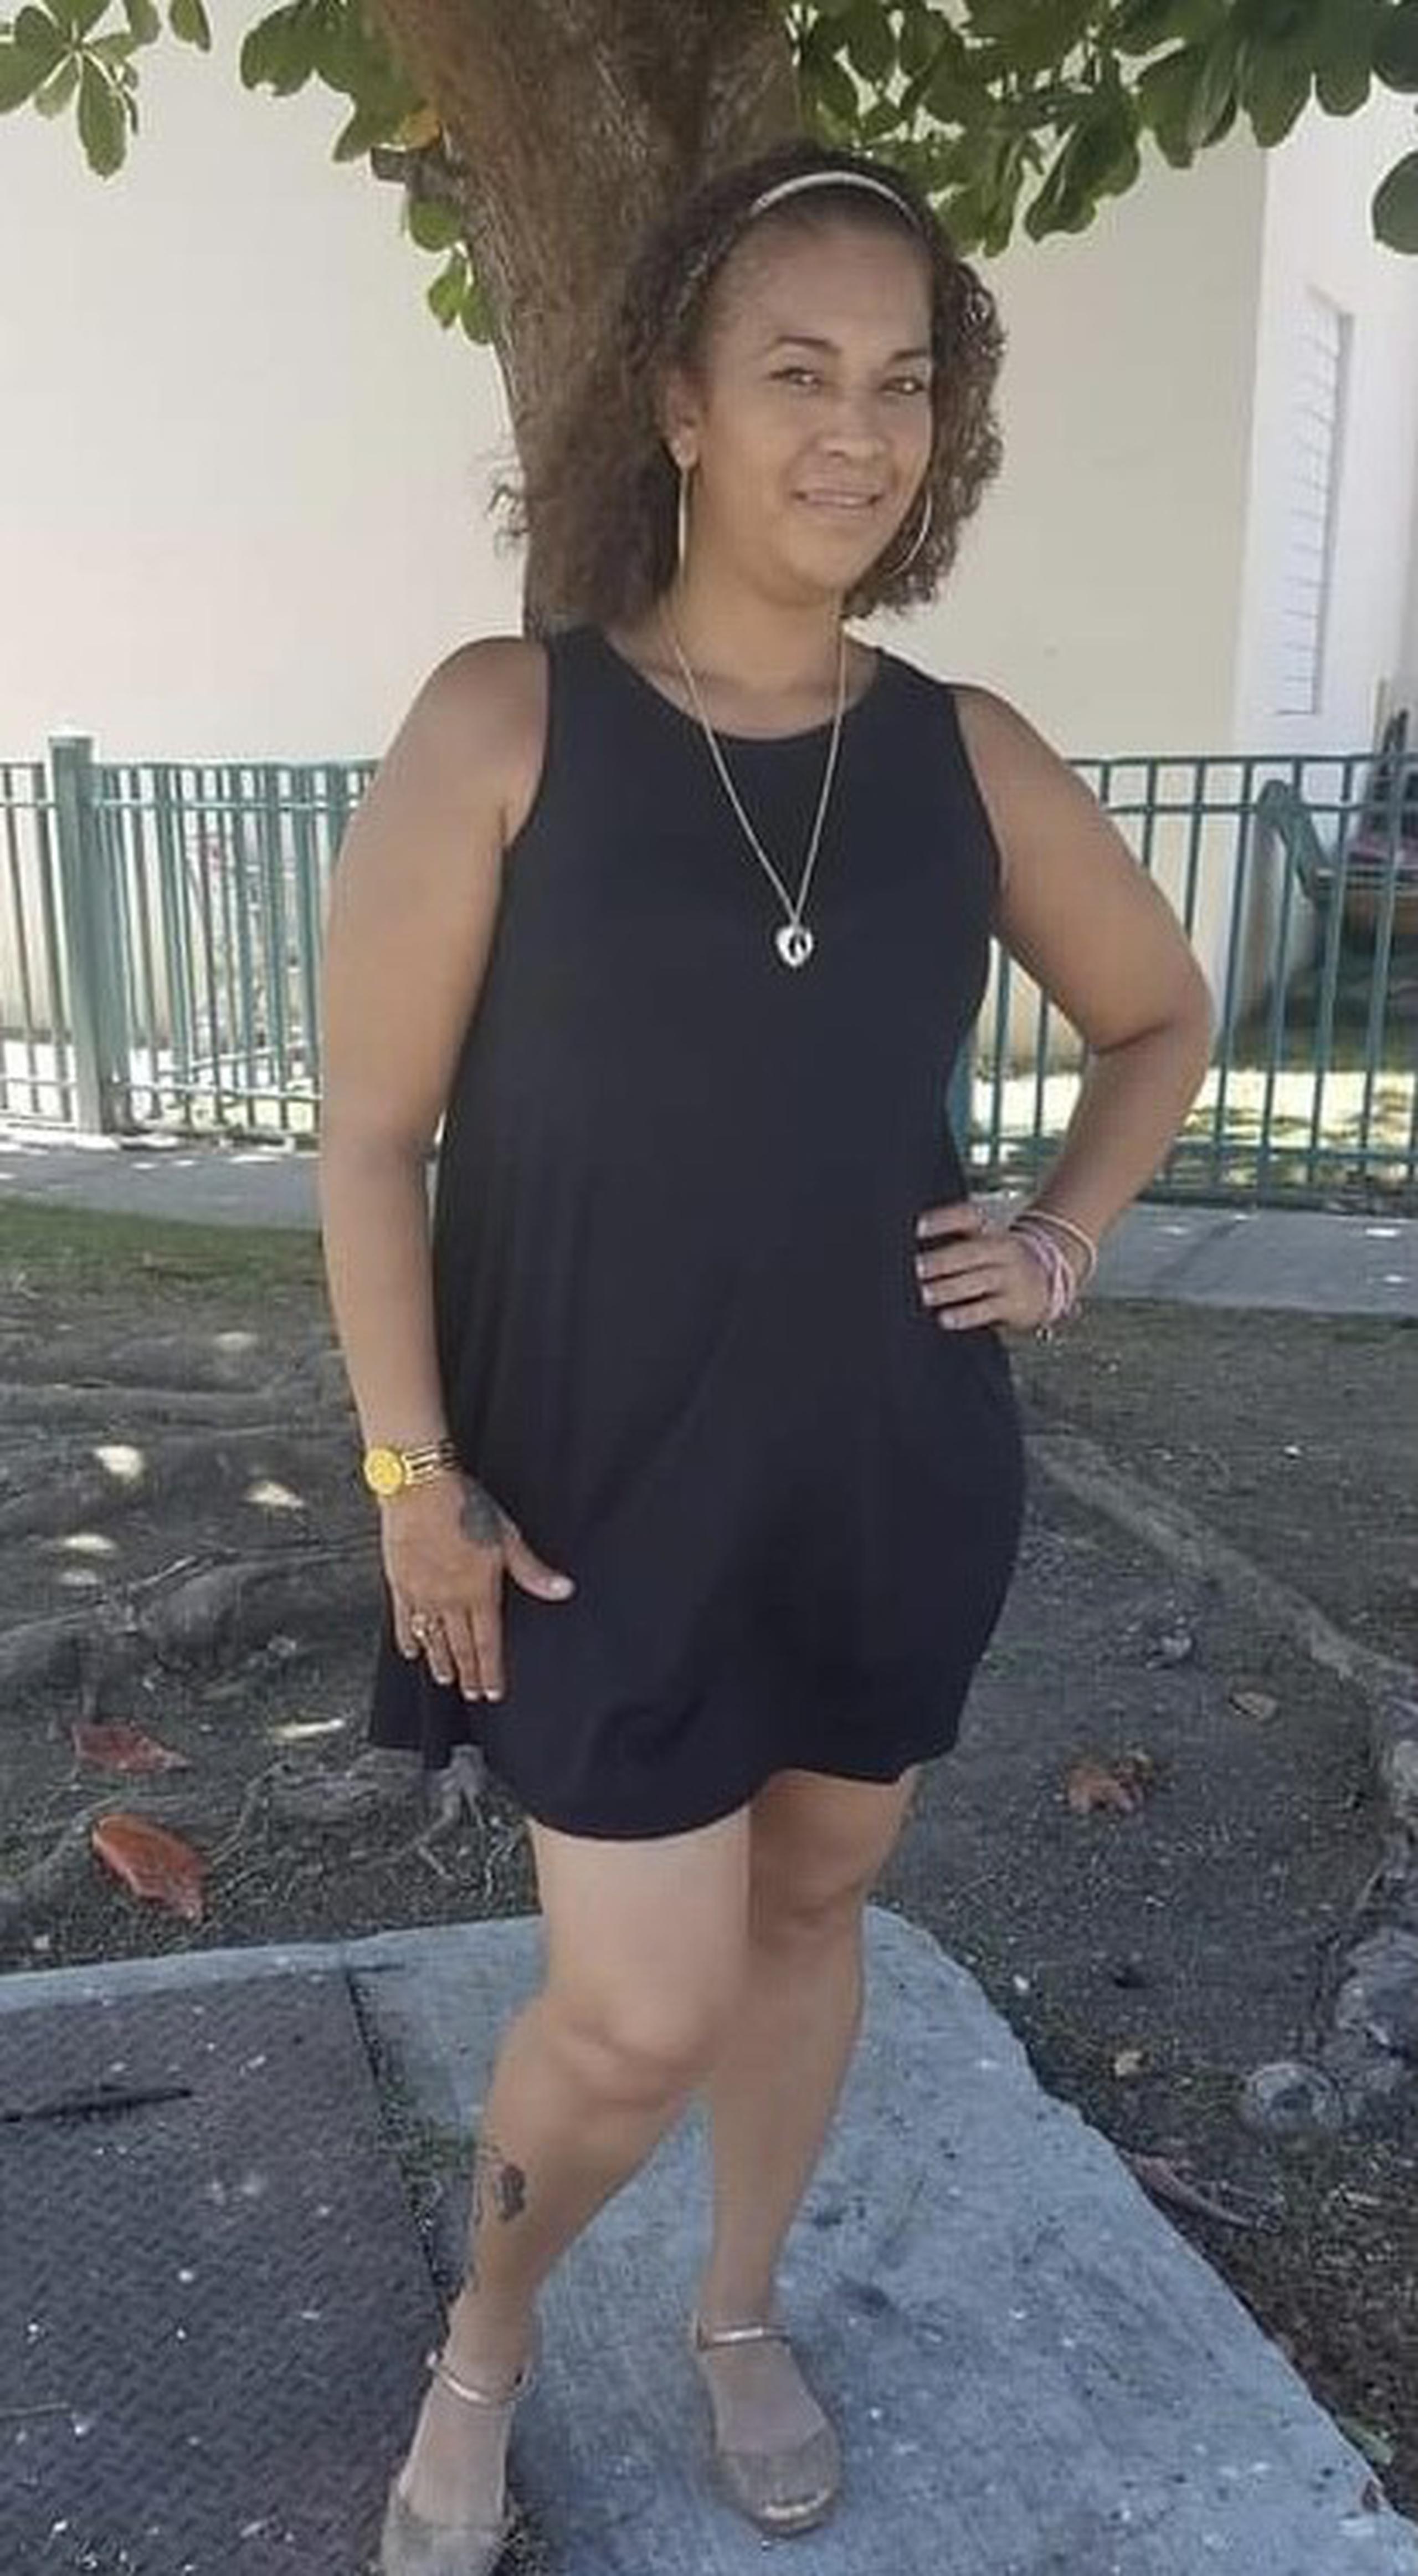 Janira Ivette Alcantaro Román de 40 años, quien era vecina del residencial Ernesto Ramos Antonini (Pámpanos) en Ponce, se encuentra desaparecida desde octubre del 2020.